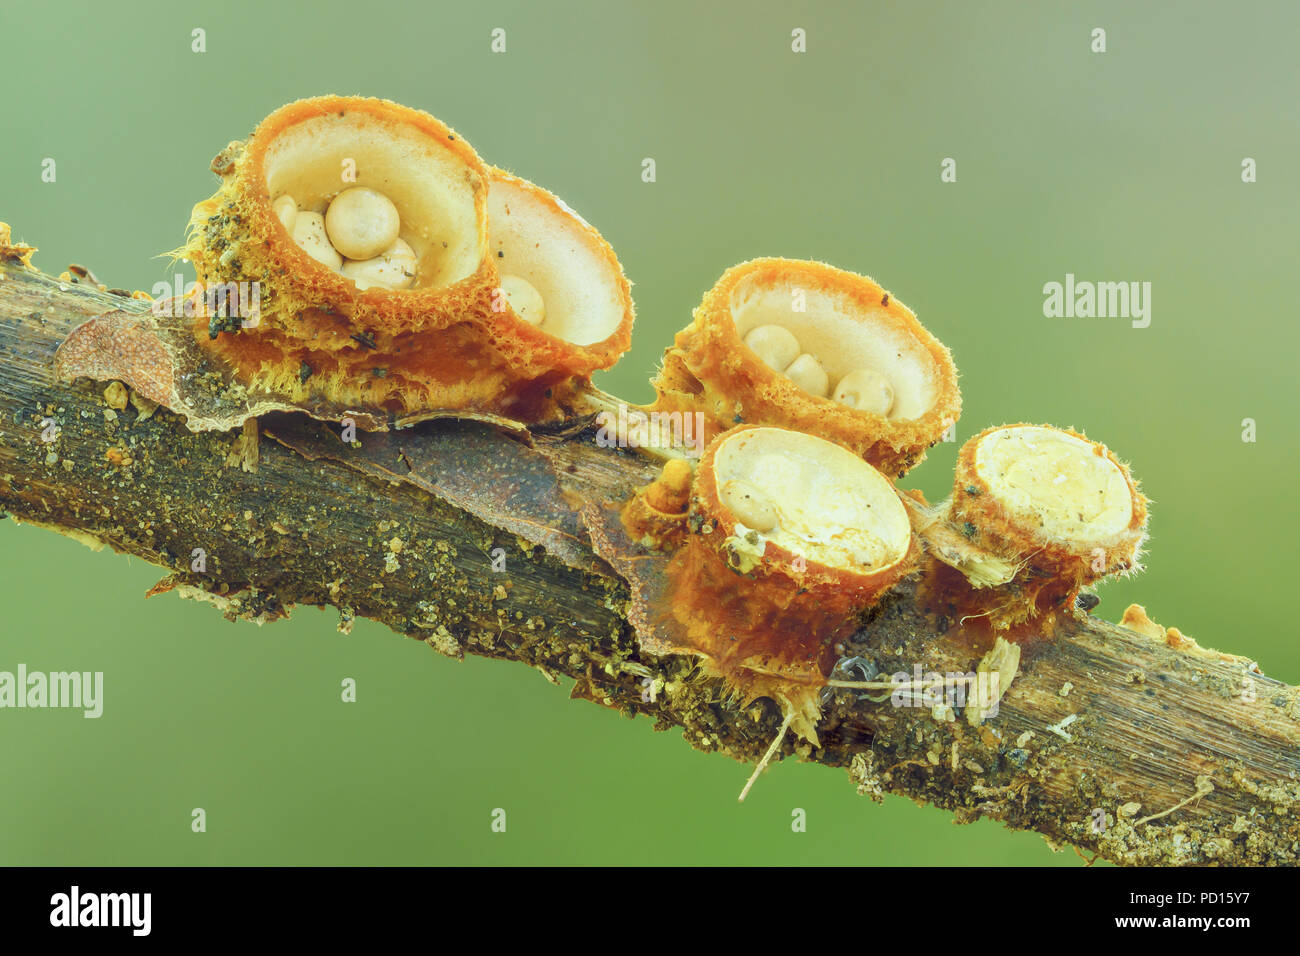 White Bird's Nest Fungus (Crucibulum laeve) fruiting bodies with egg-shaped peridioles inside the 'nest'. Stock Photo